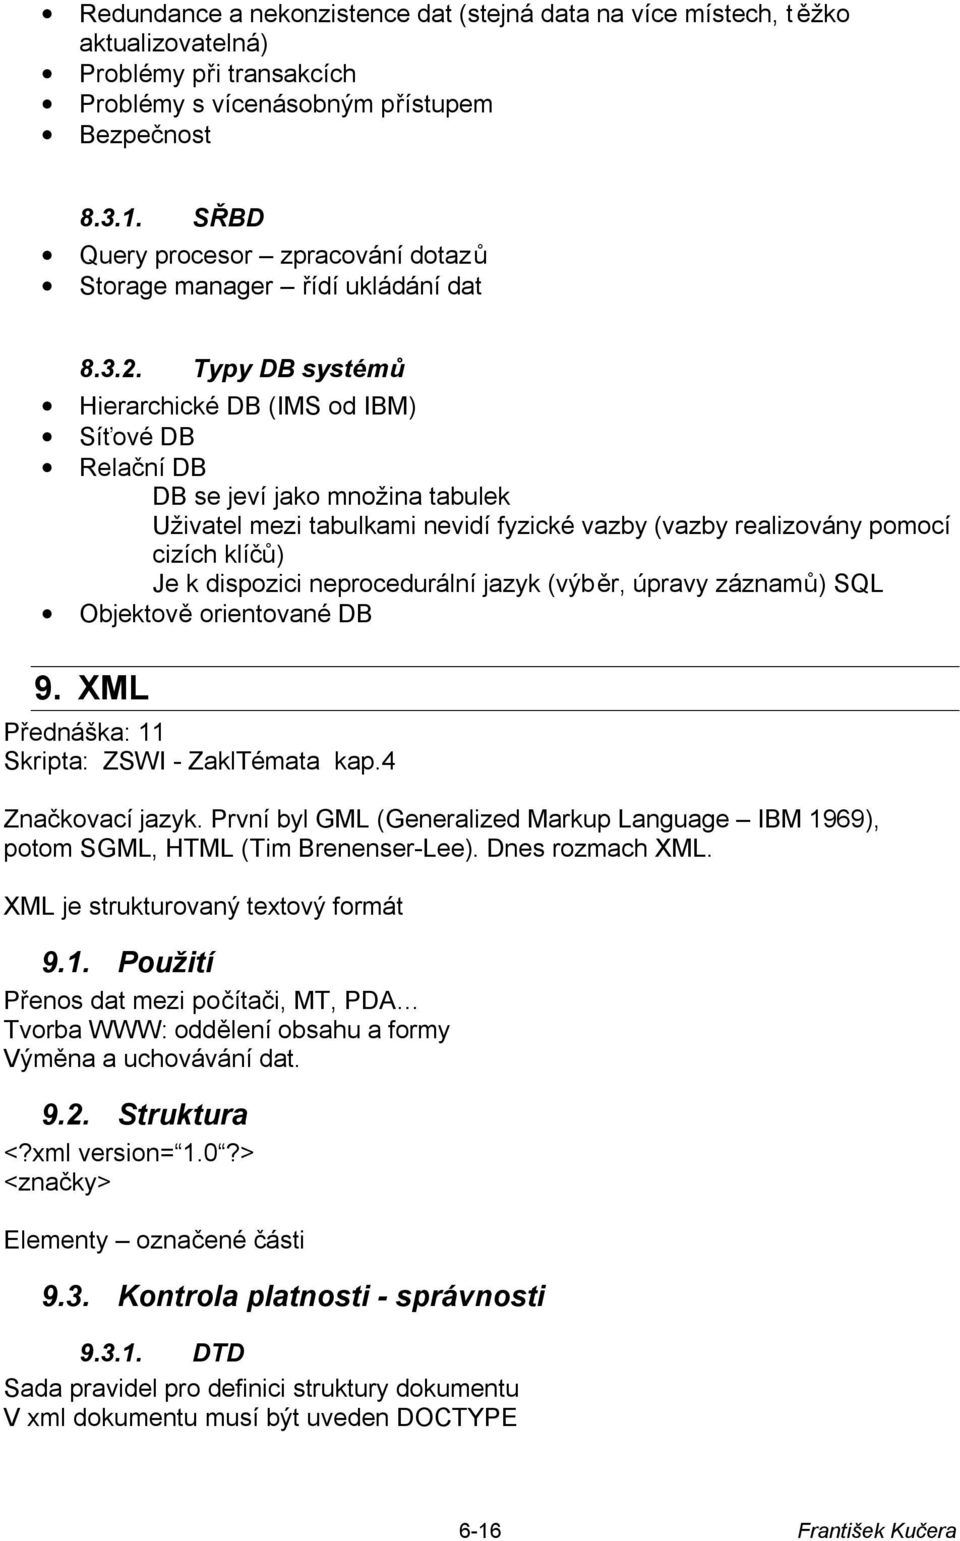 Typy DB systémů Hierarchické DB (IMS od IBM) Síťové DB Relační DB DB se jeví jako množina tabulek Uživatel mezi tabulkami nevidí fyzické vazby (vazby realizovány pomocí cizích klíčů) Je k dispozici